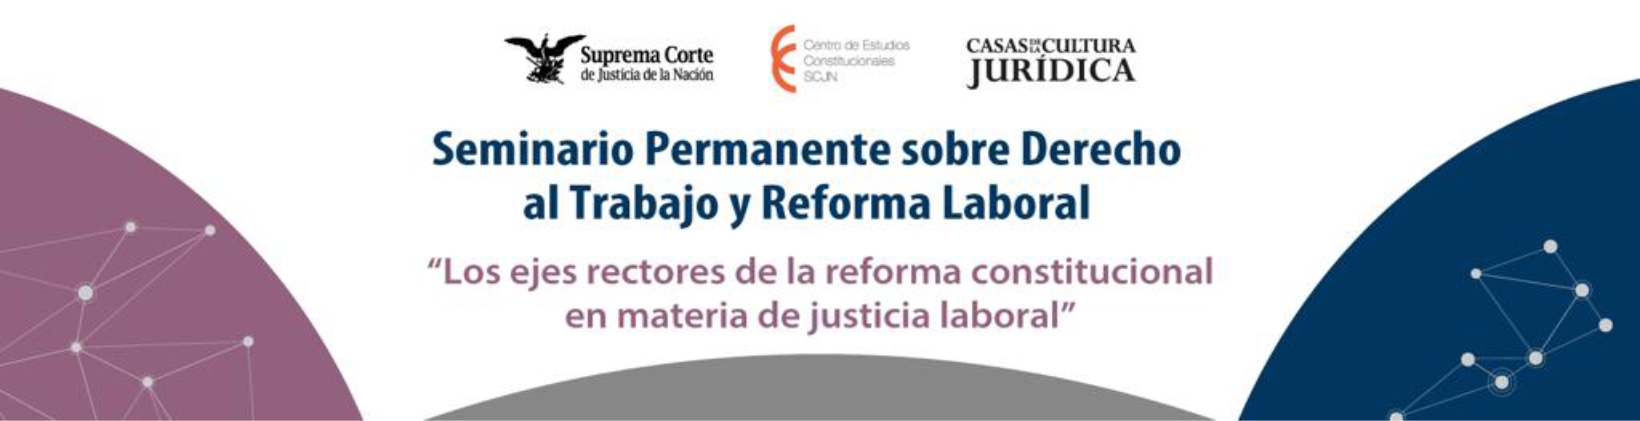 Banner del Seminario Permanente sobre Derecho al Trabajo y Reforma Laboral